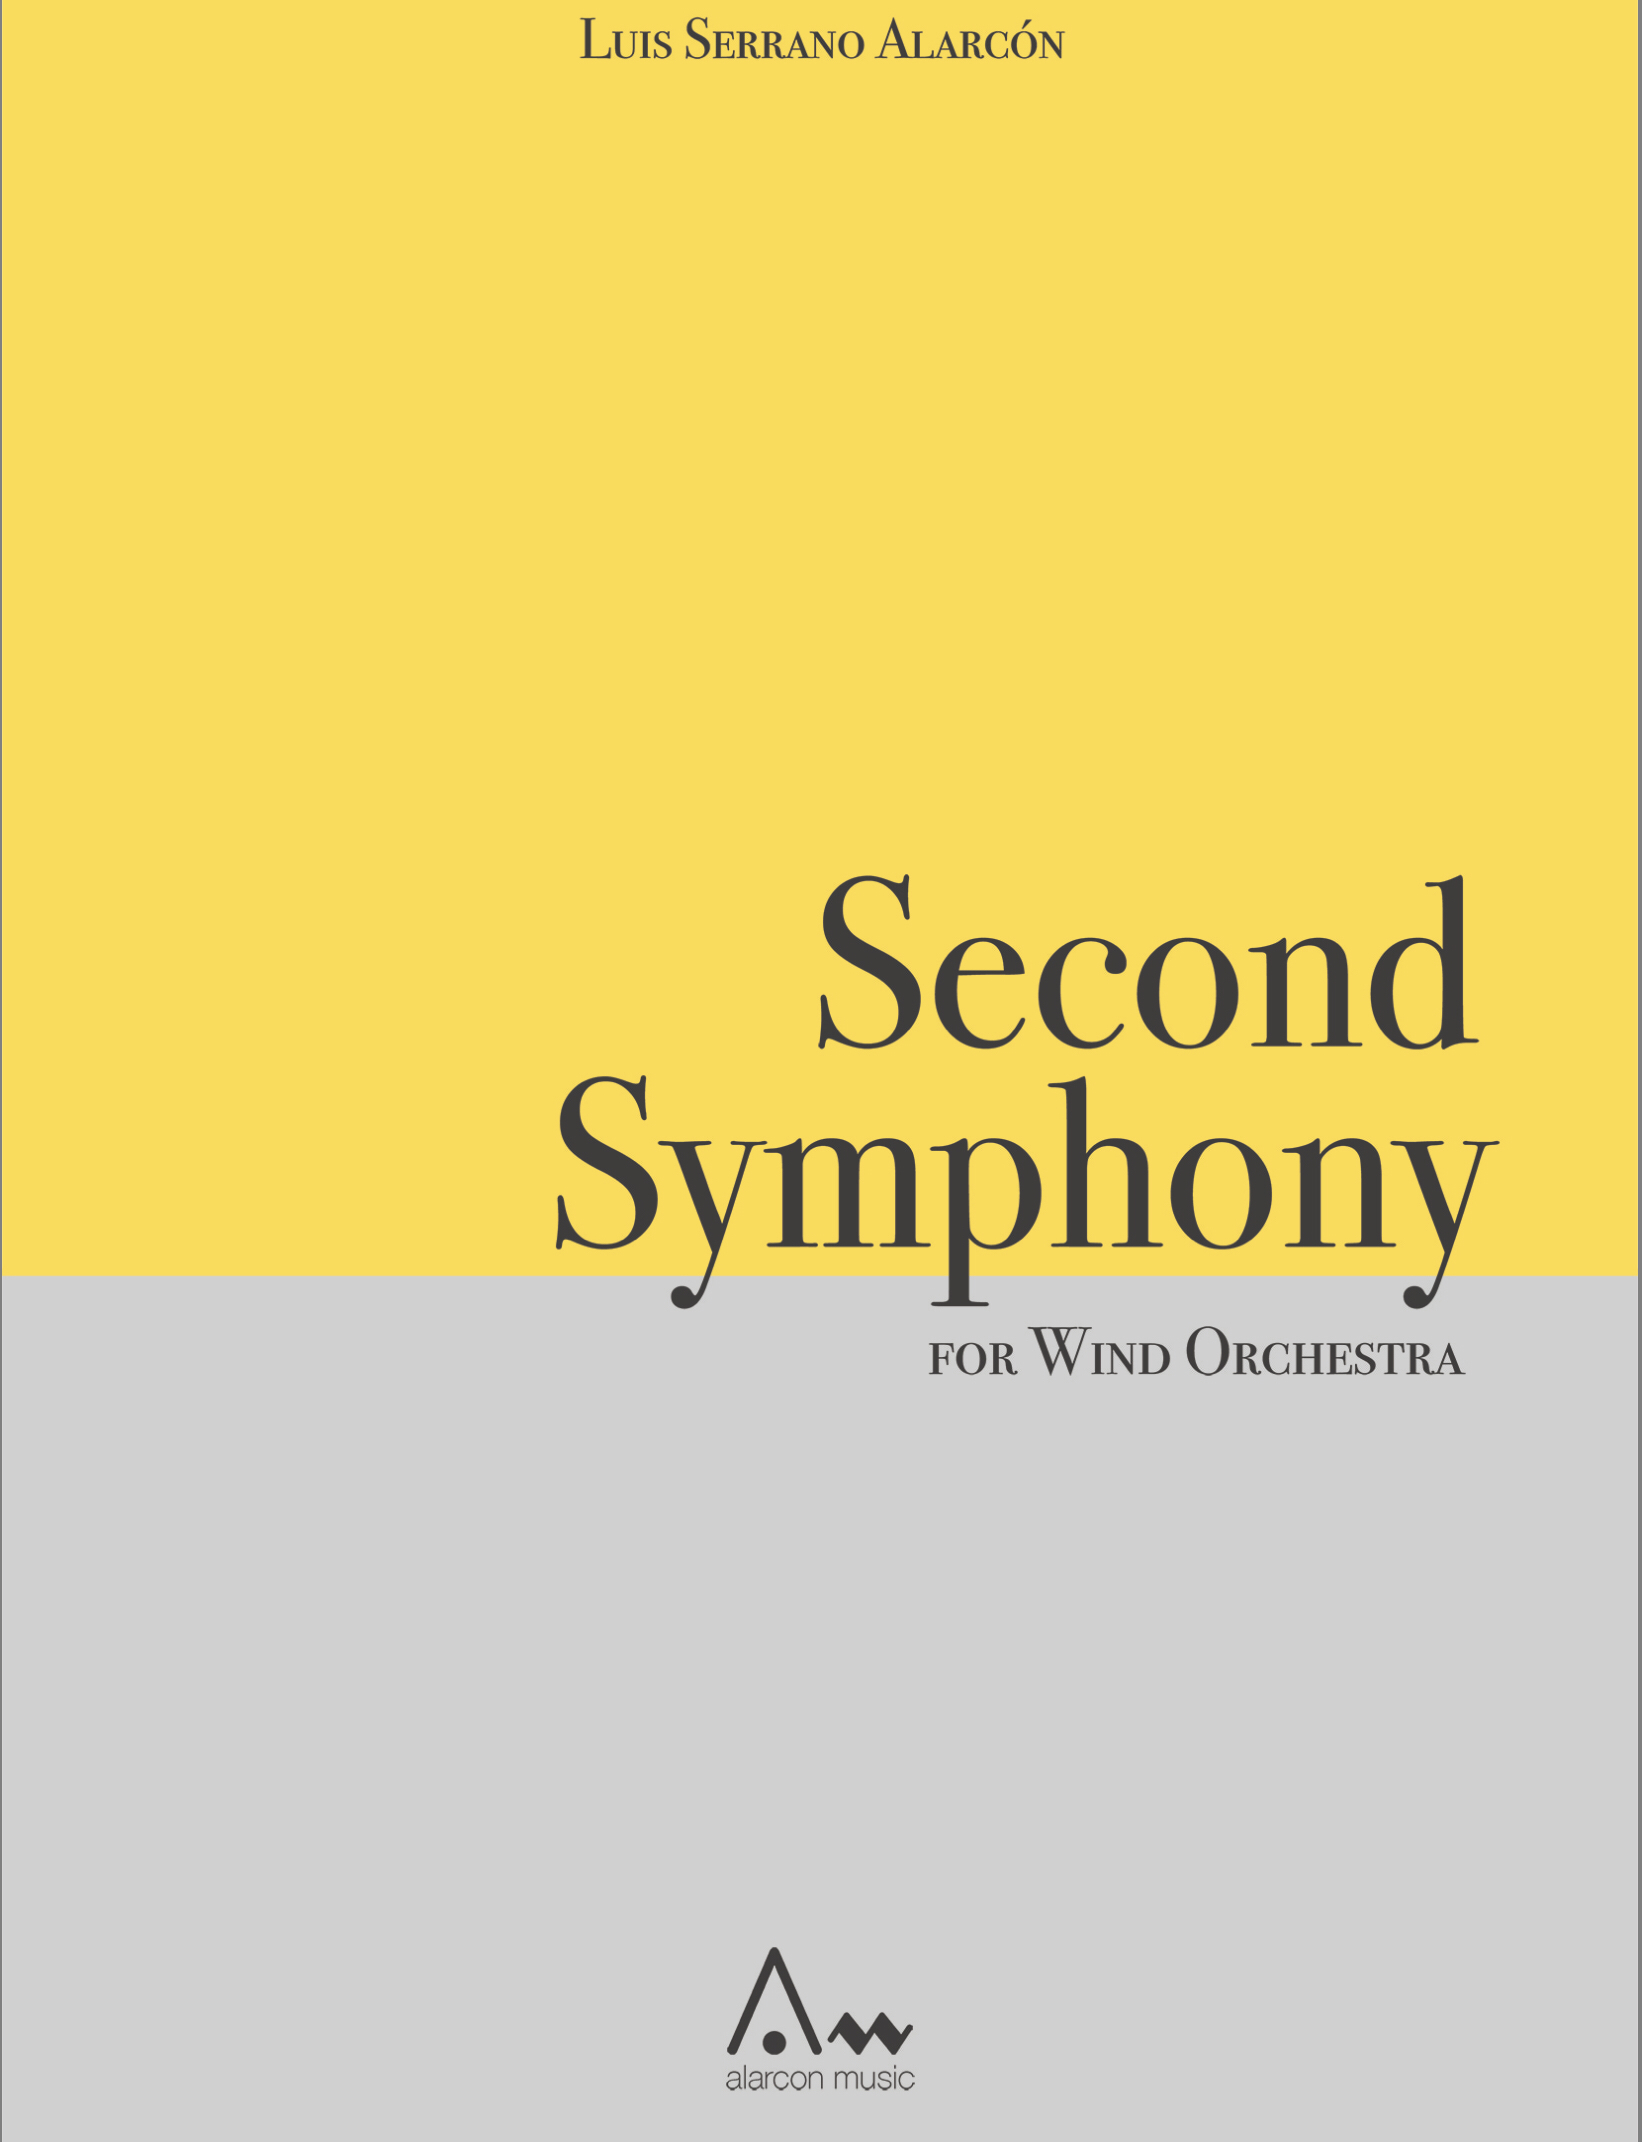 Symphony No. 2 (Rental) by Luis Serrano Alarcon